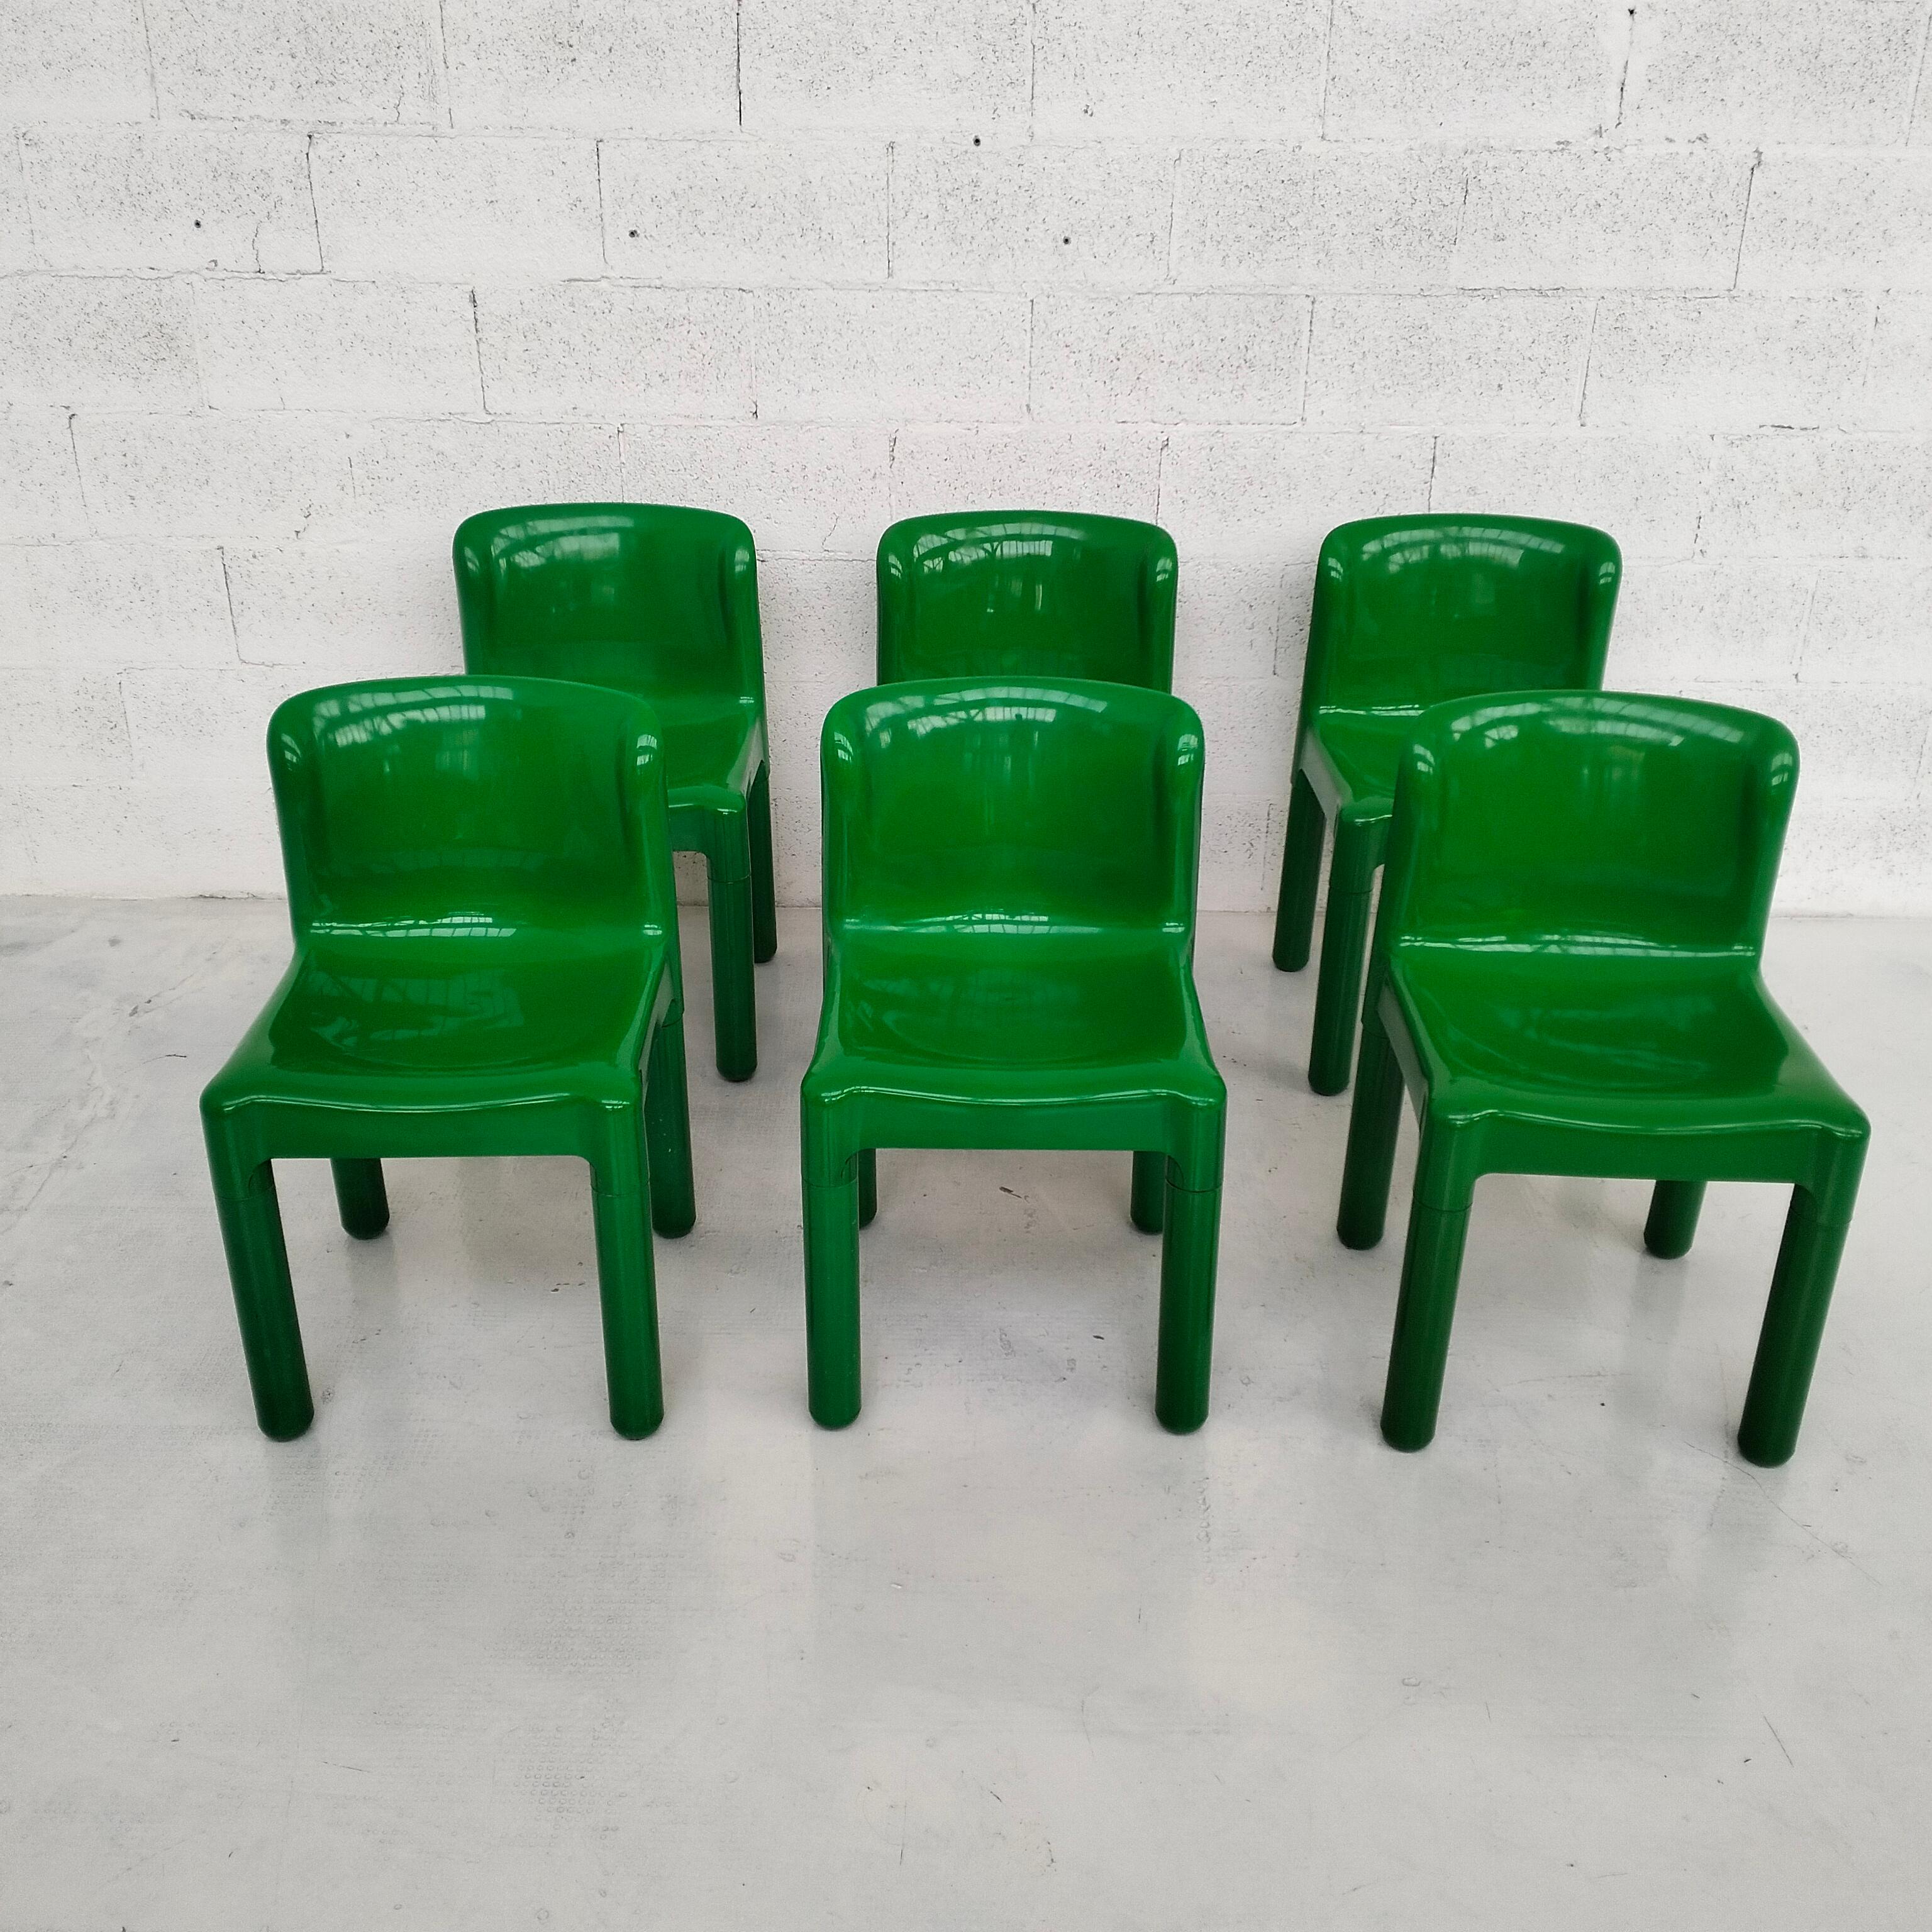 Grüne Kunststoffstühle 4875 von Carlo Bartoli für Kartell 1970er Jahre, 6-teilig (Italienisch)